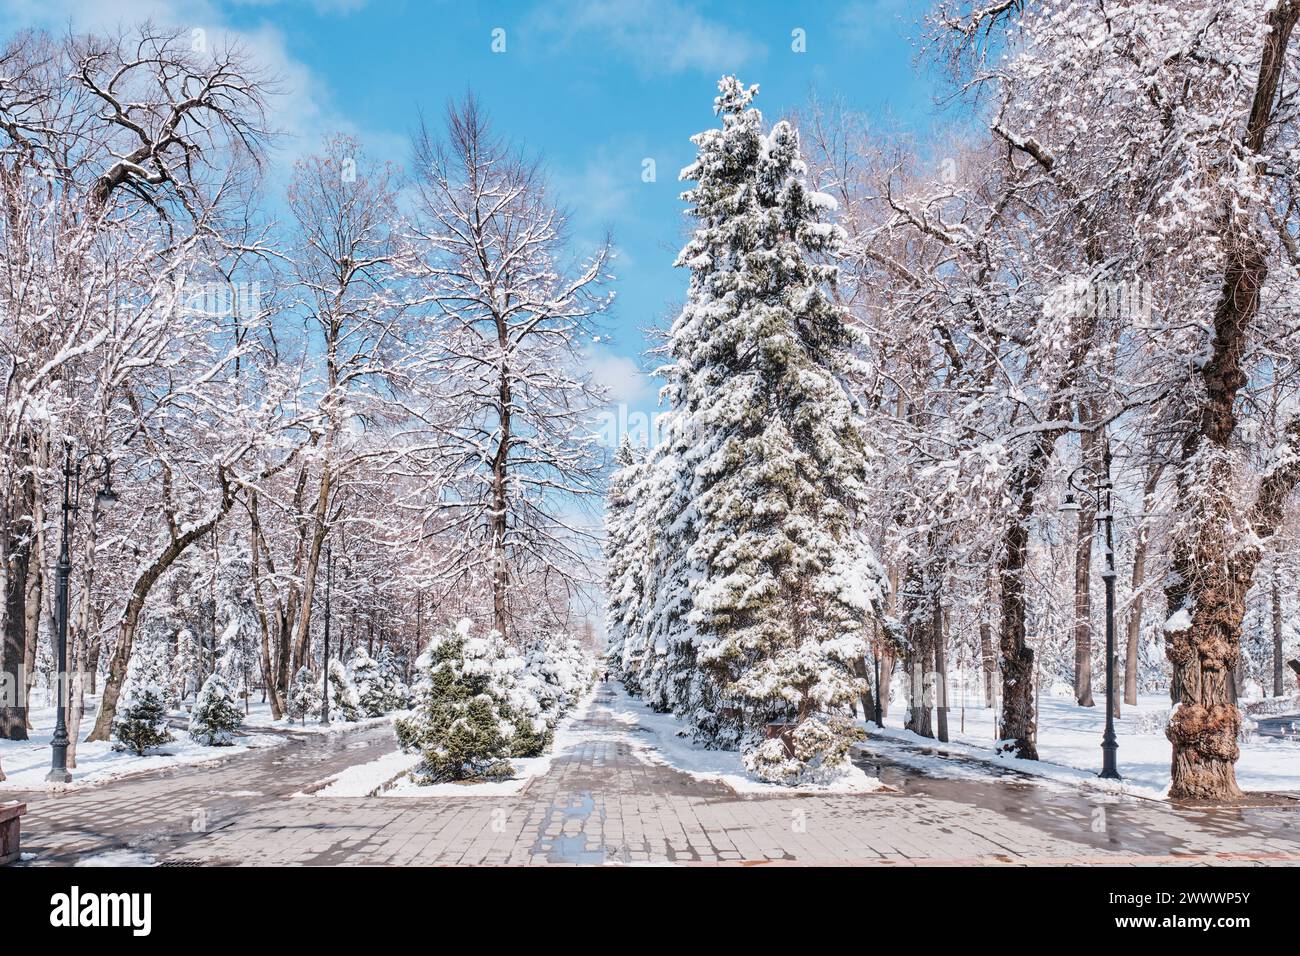 Parc de la ville de printemps et chute soudaine de neige. Parc nommé d'après 28 gardiens Panfilov, Almaty, Kazakhstan. Paysage urbain. Banque D'Images